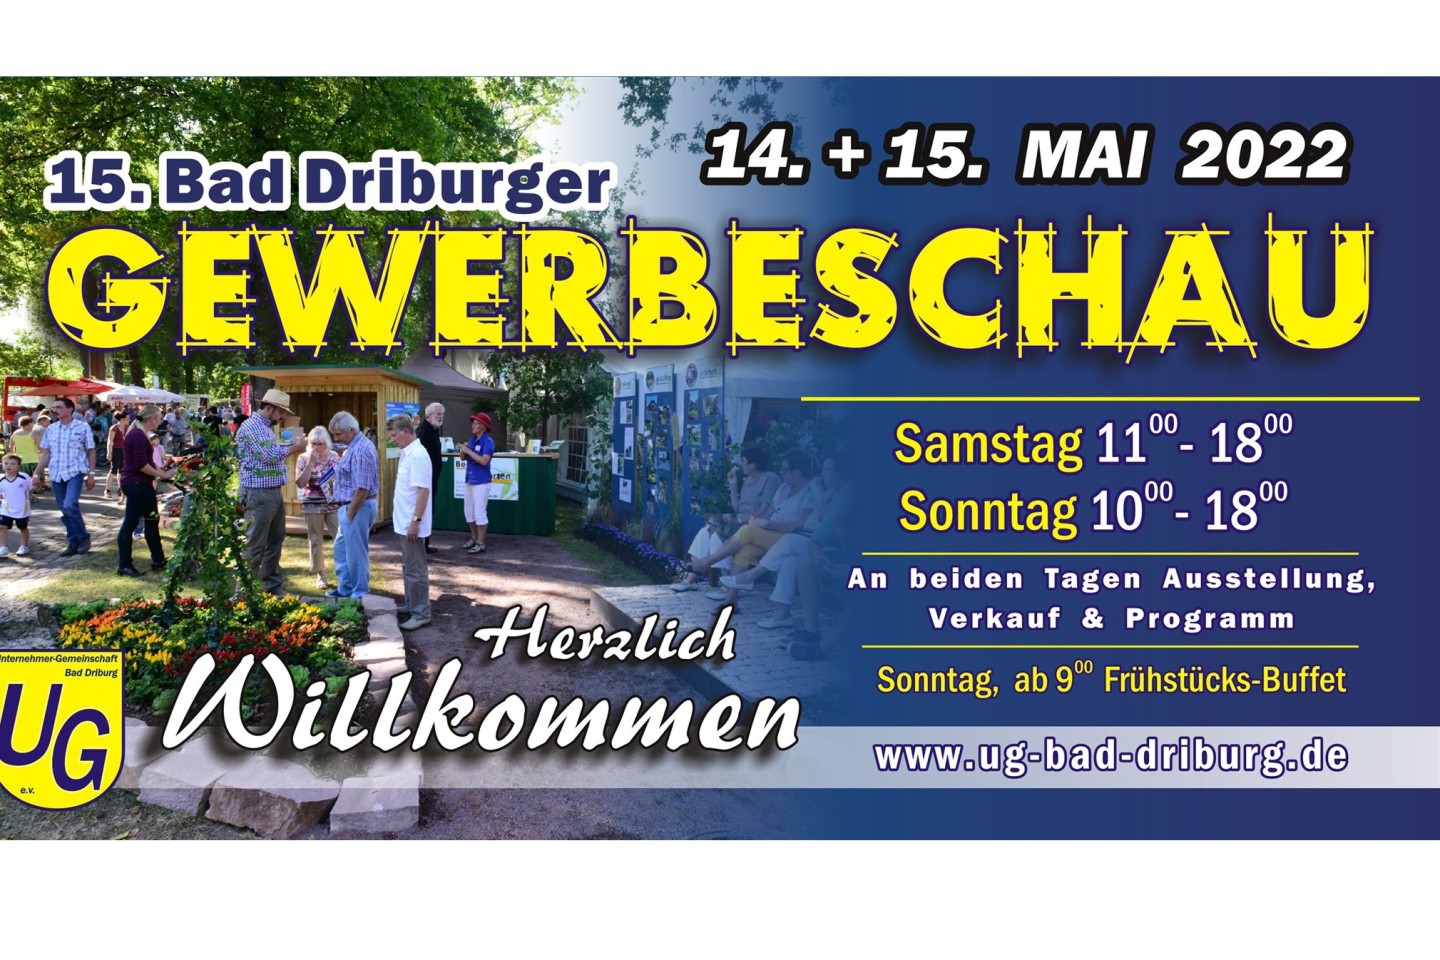 15. Bad Driburger Gewerbeschau am 14. und 15. Mai 2022 in der Gräfin-Margarete-Allee